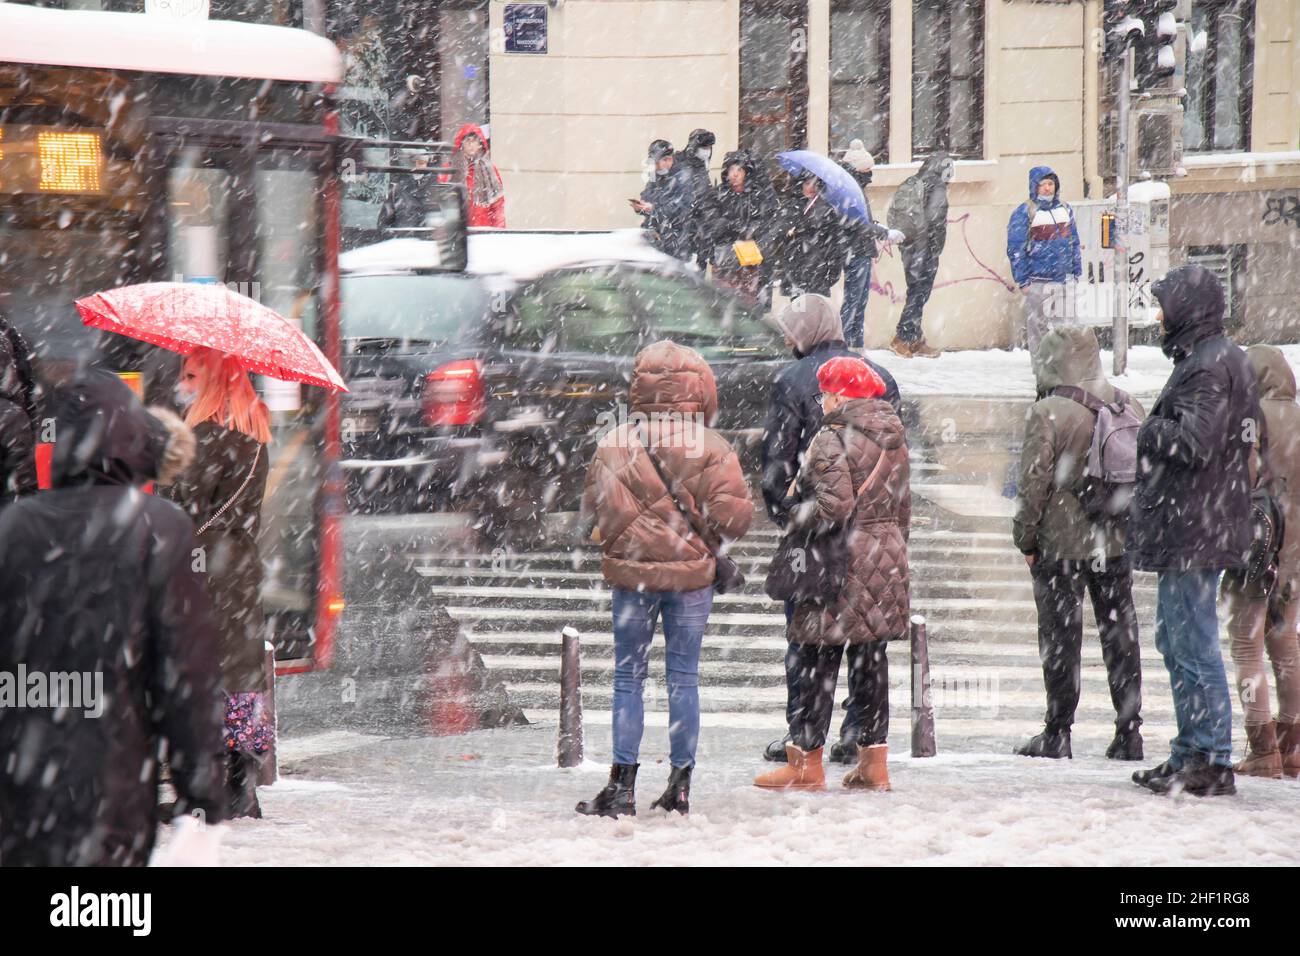 Belgrade, Serbie - 11 janvier 2022 : les gens attendent au carrefour sur une rue enneigée de la ville pendant une forte chute de neige Banque D'Images